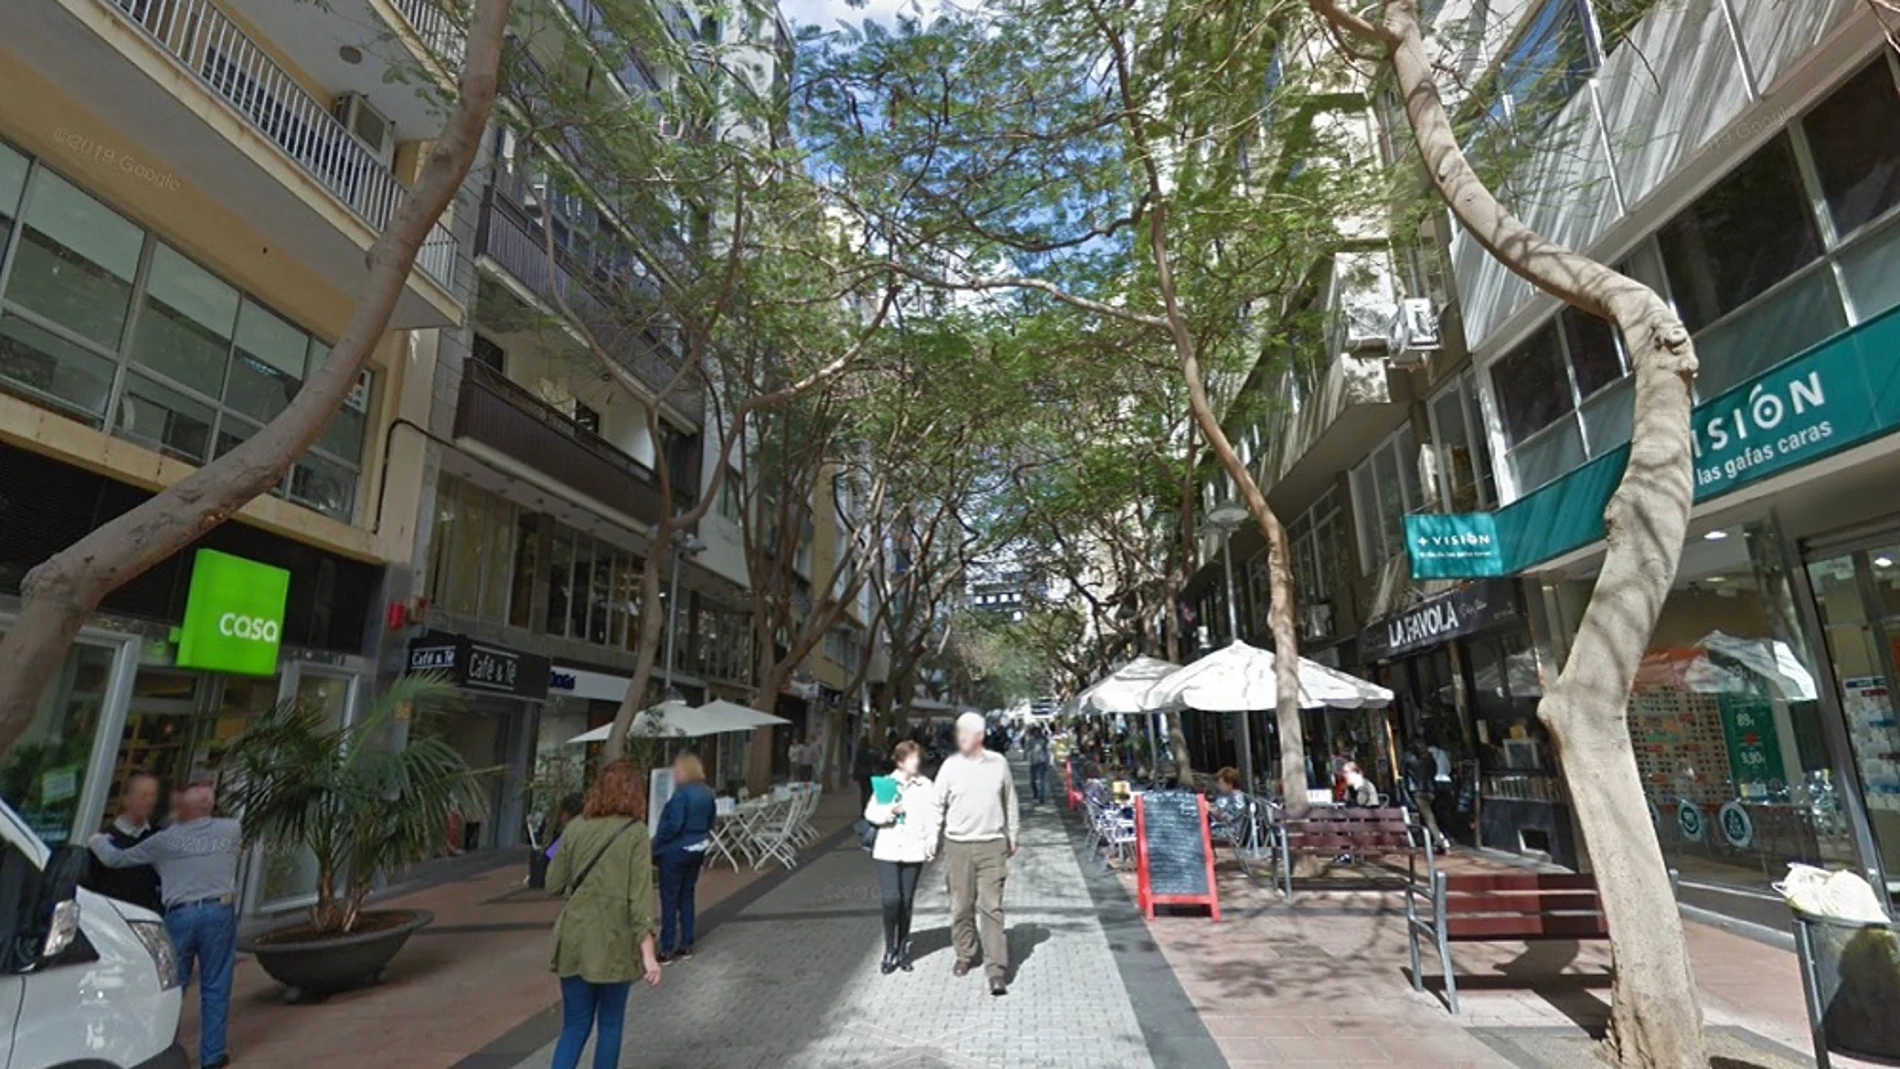 Calle en la que se produjeron los hechos en Santa Cruz de Tenerife